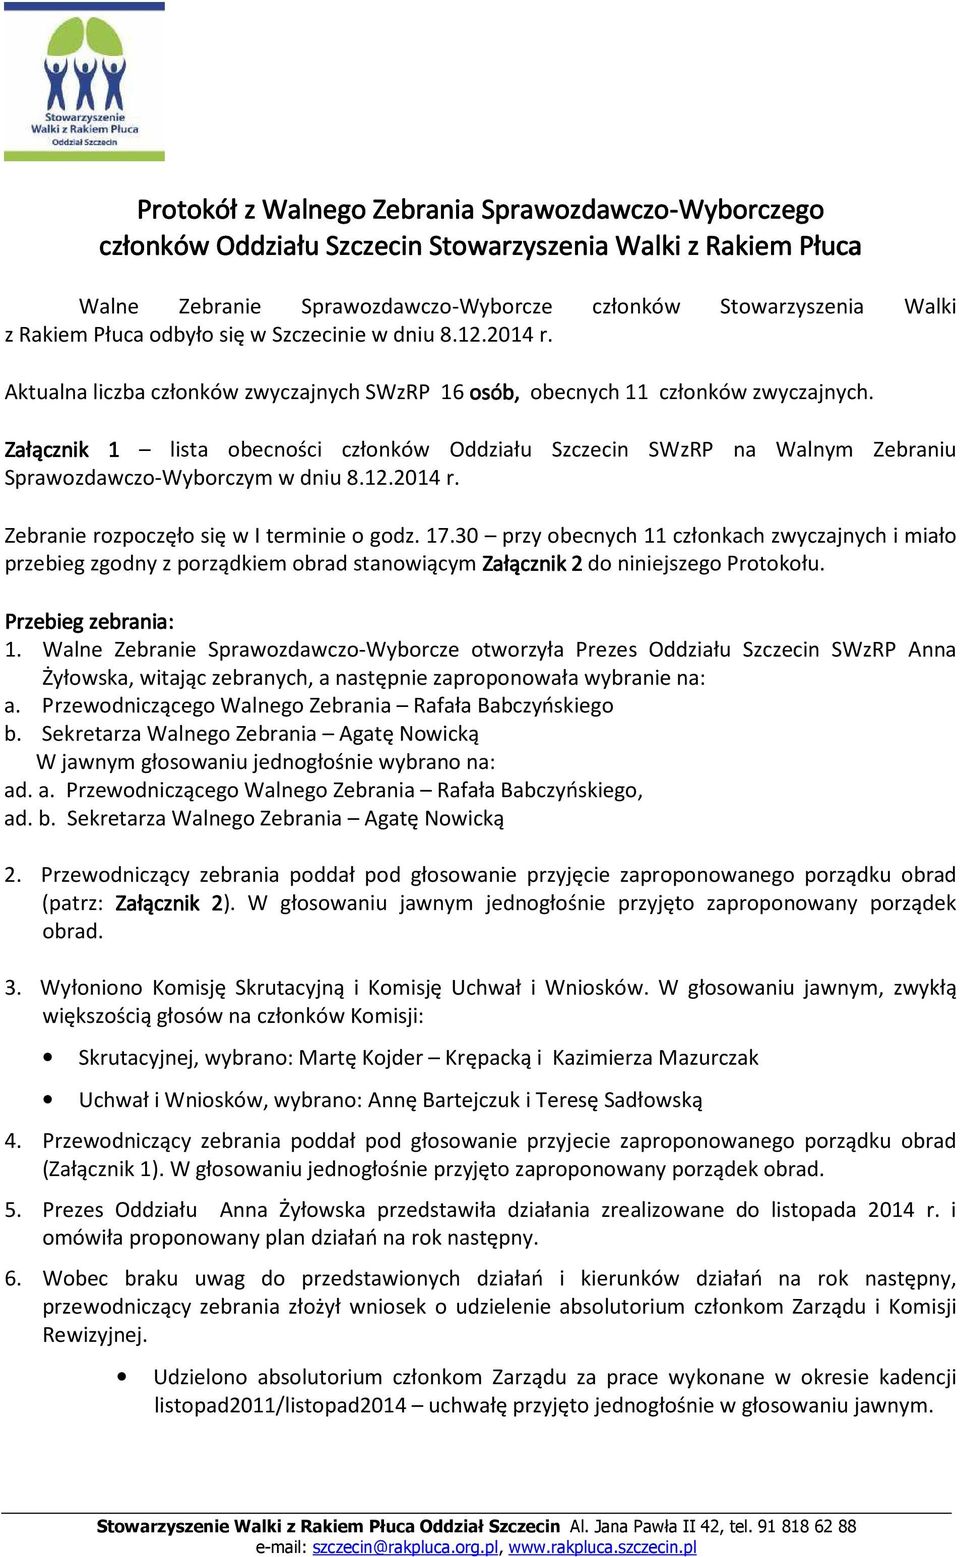 Załącznik 1 lista obecności członków Oddziału Szczecin SWzRP na Walnym Zebraniu Sprawozdawczo-Wyborczym w dniu 8.12.2014 r. Zebranie rozpoczęło się w I terminie o godz. 17.